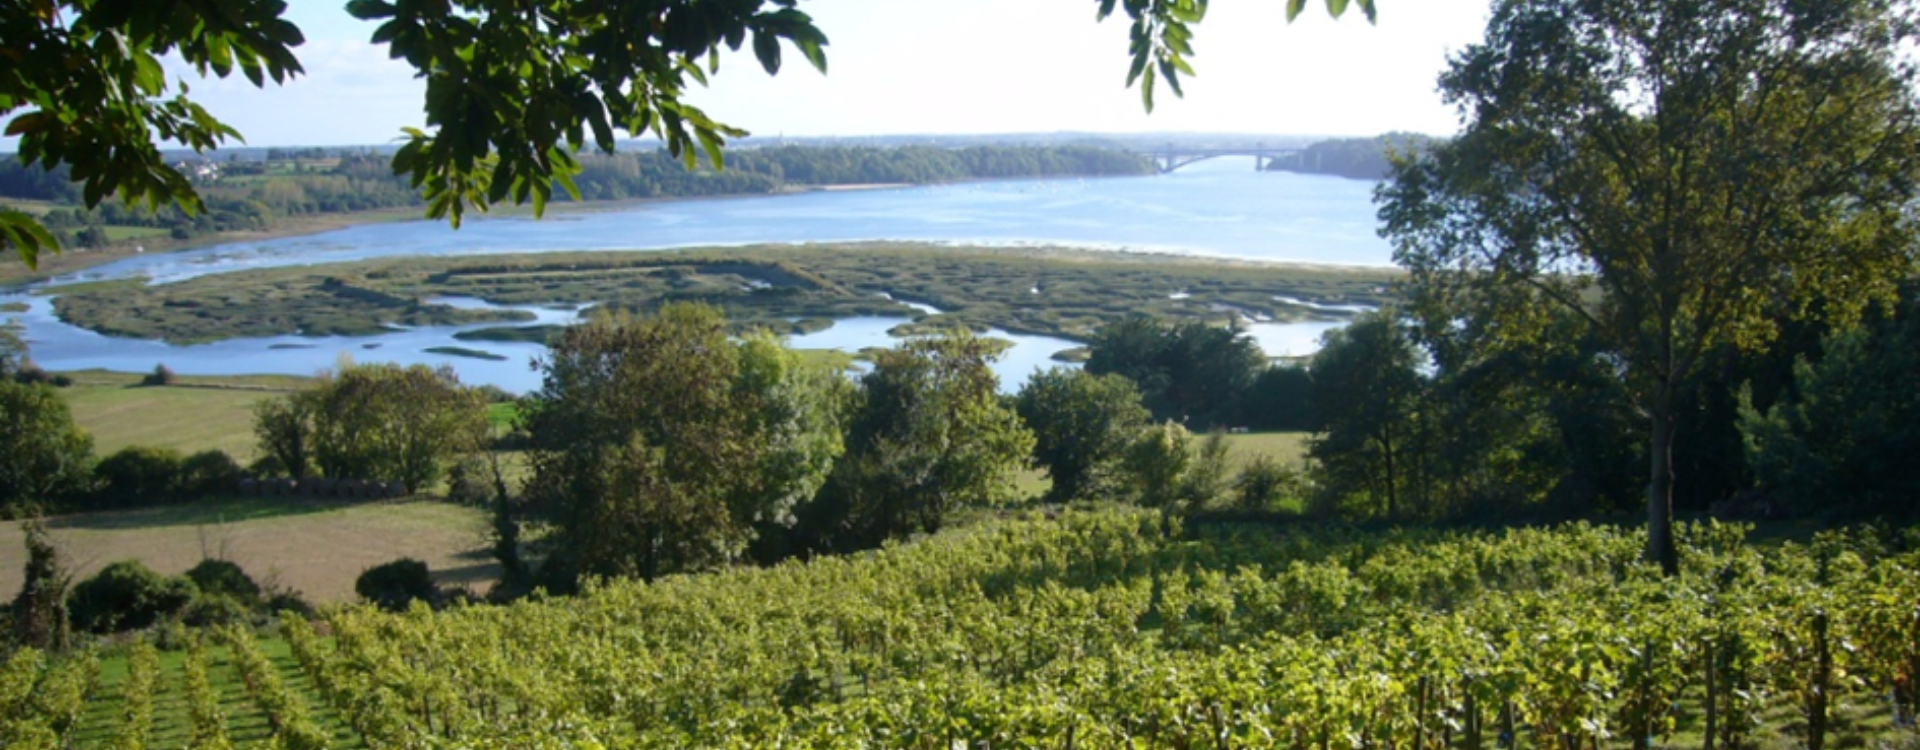 Les endroits les plus insolites où l'on fait pousser la vigne en France – Vignobles atypiques-img